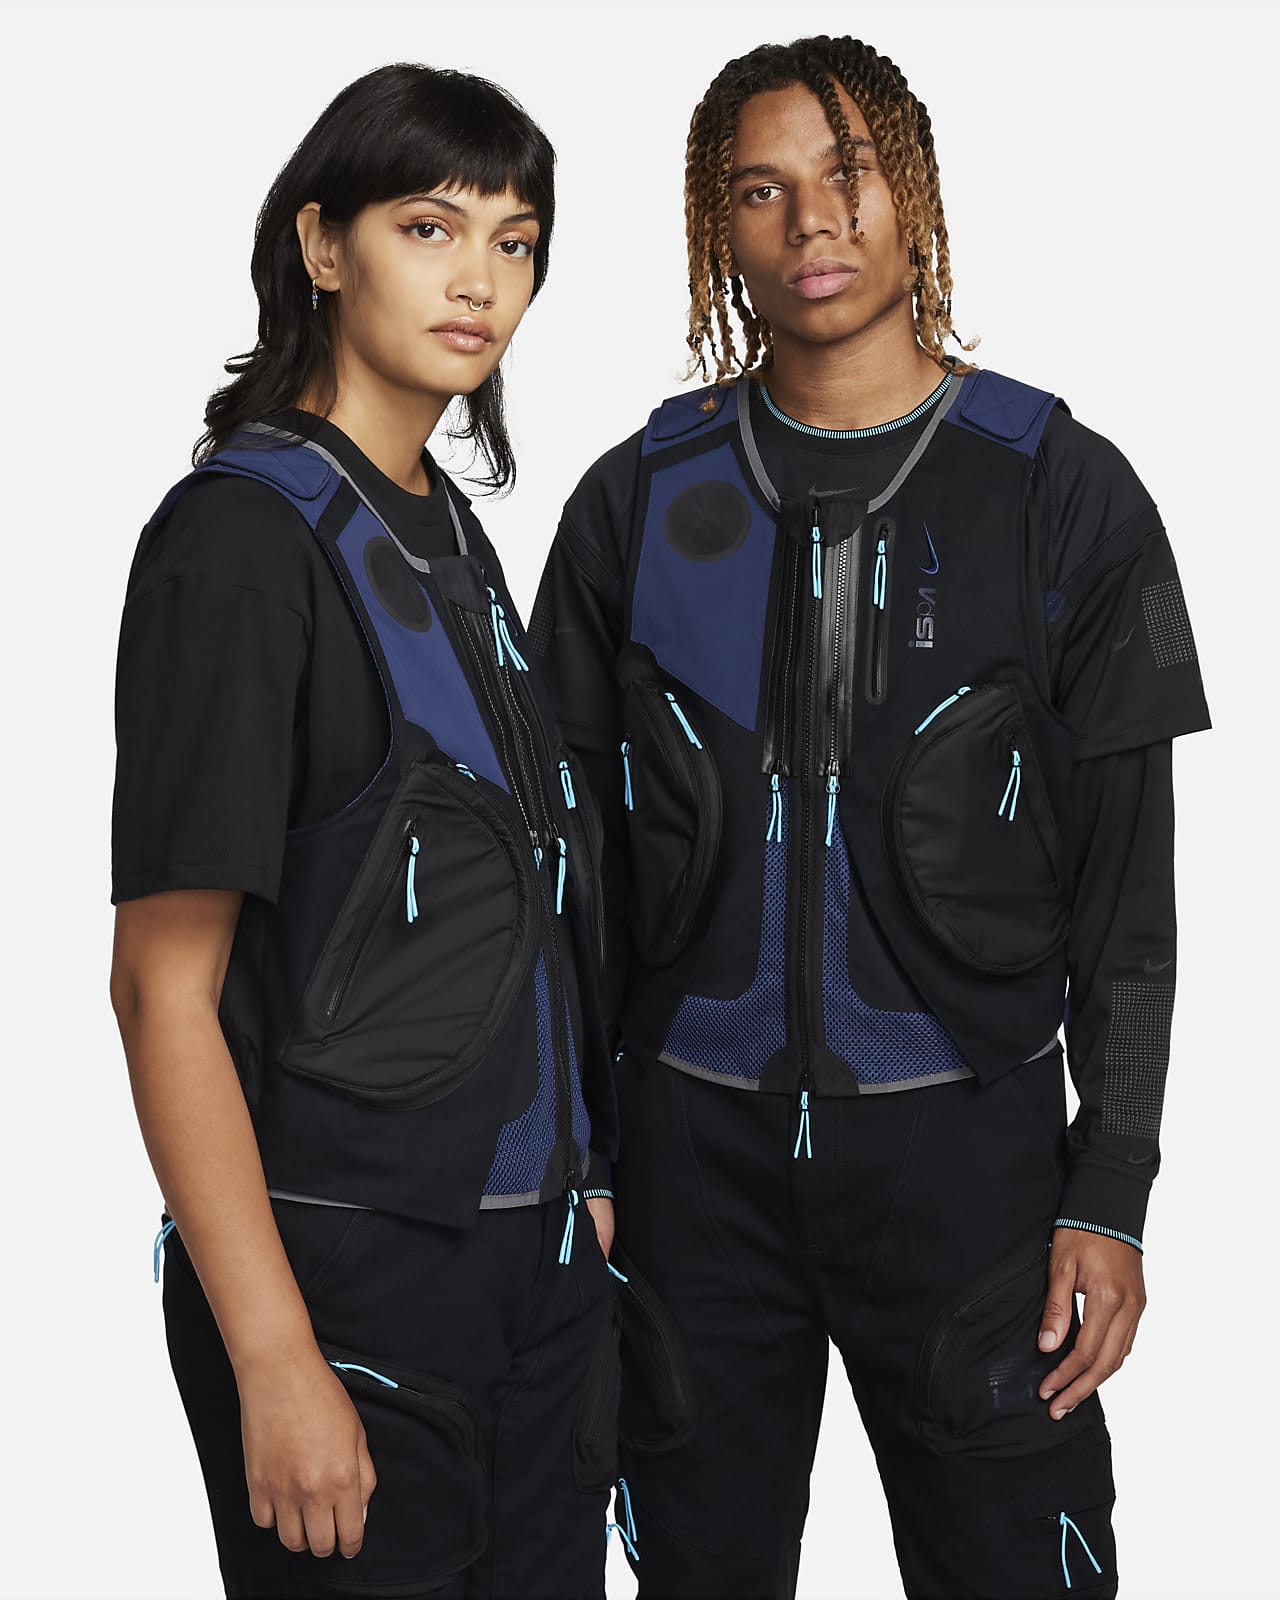 Nike ISPA Vest 2.0